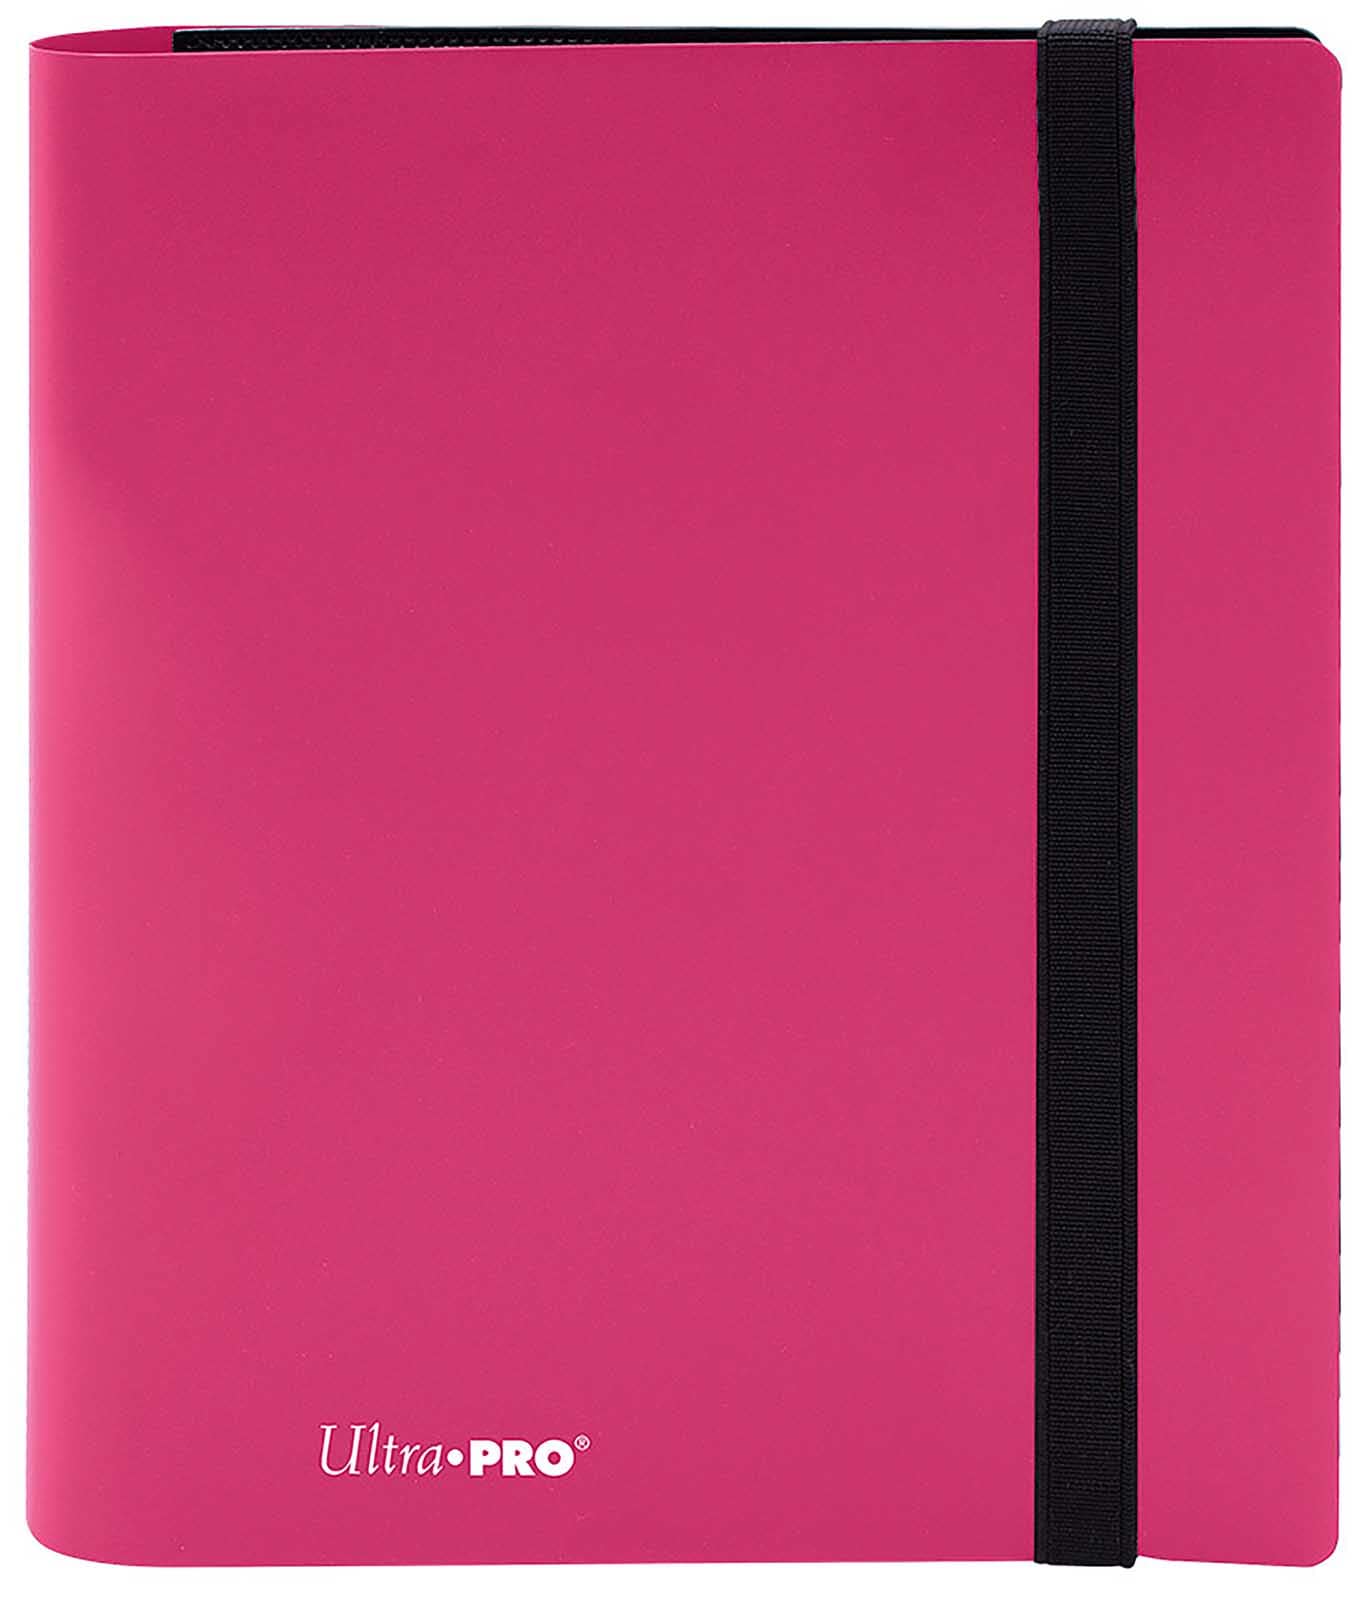 Eclipse 4-Pocket - Pink - Ultra PRO Ordner